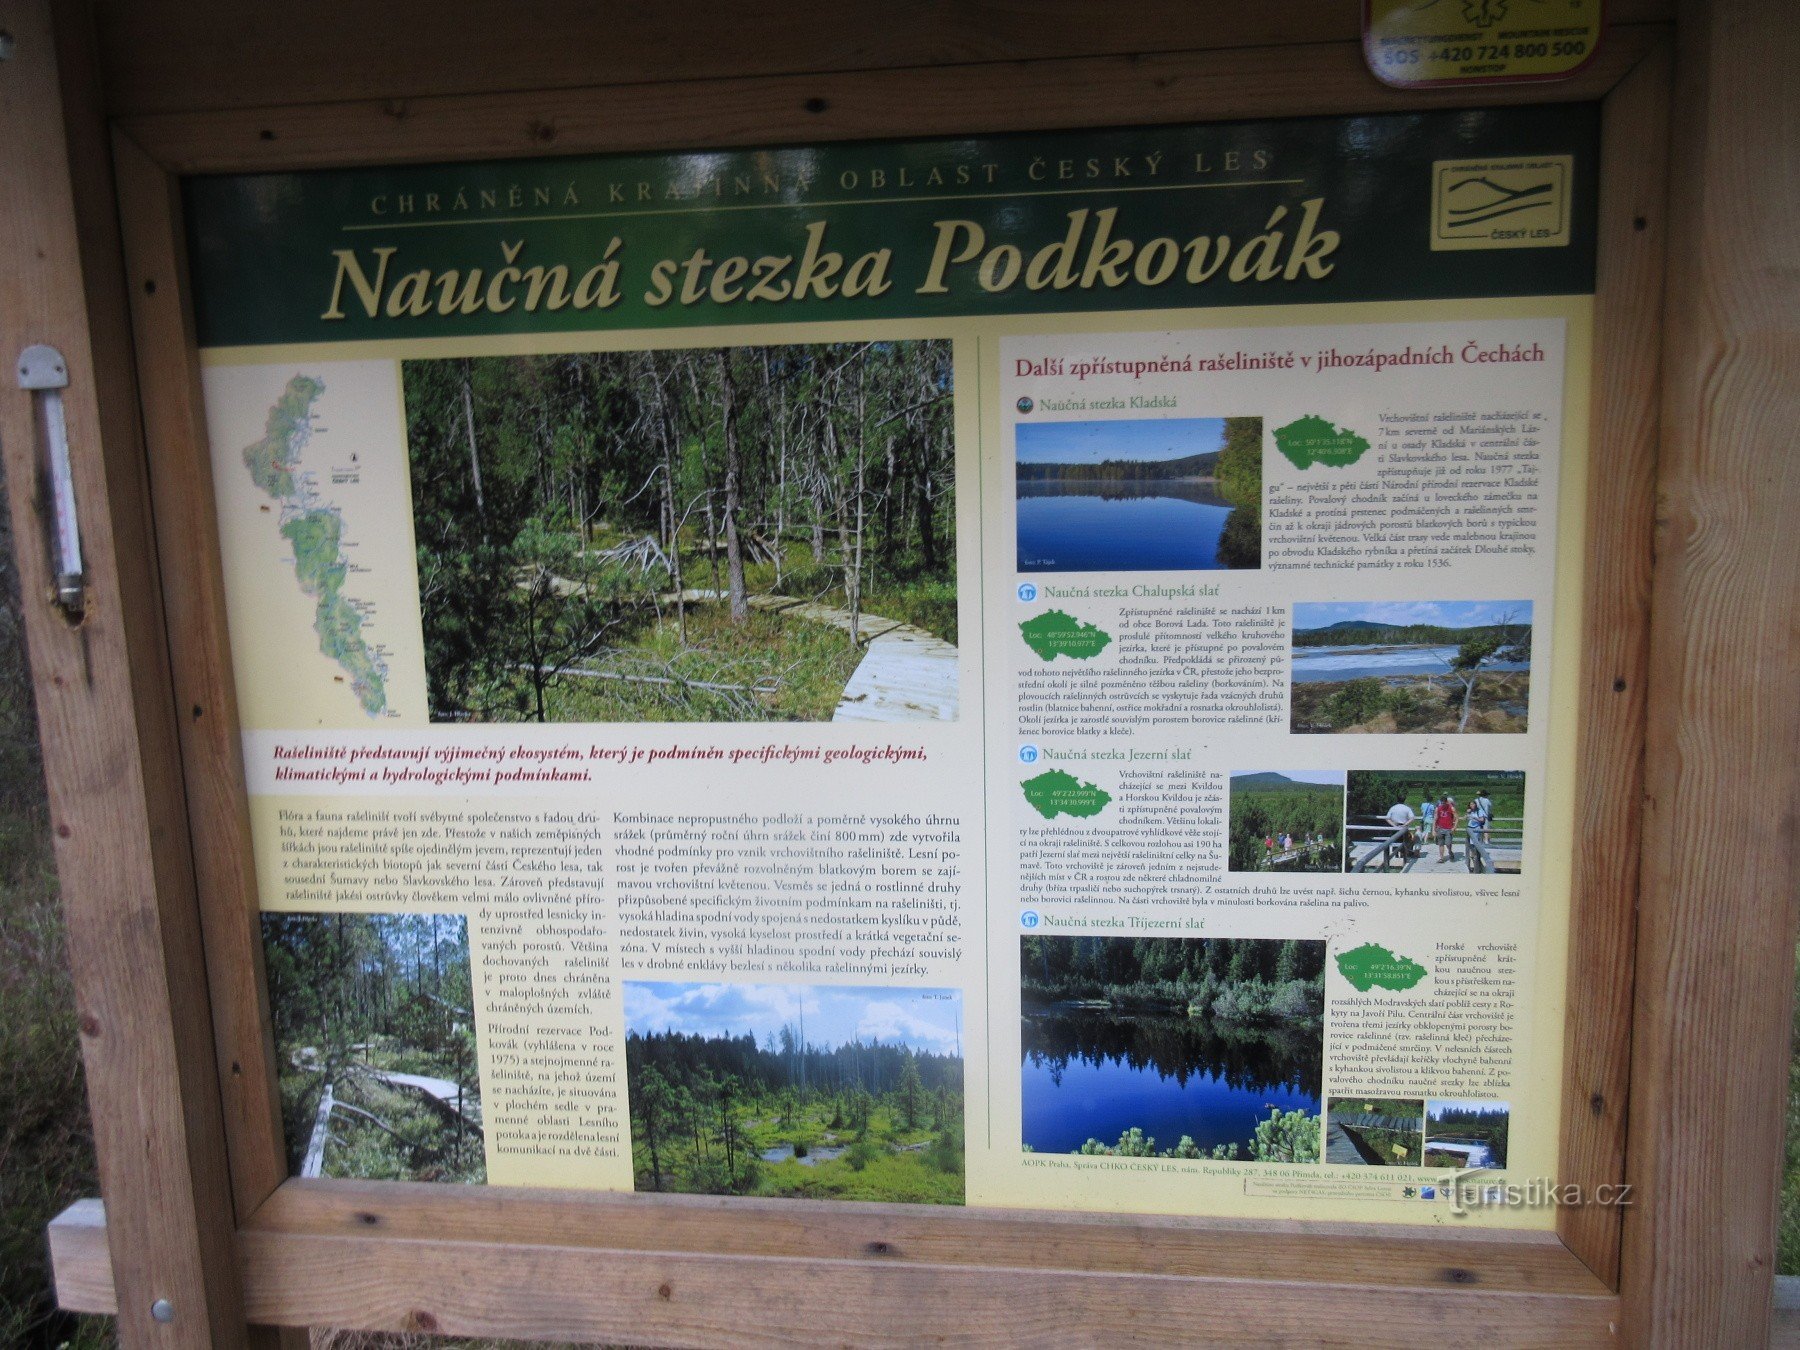 Bohemian Forest - trilha educacional Podkovák